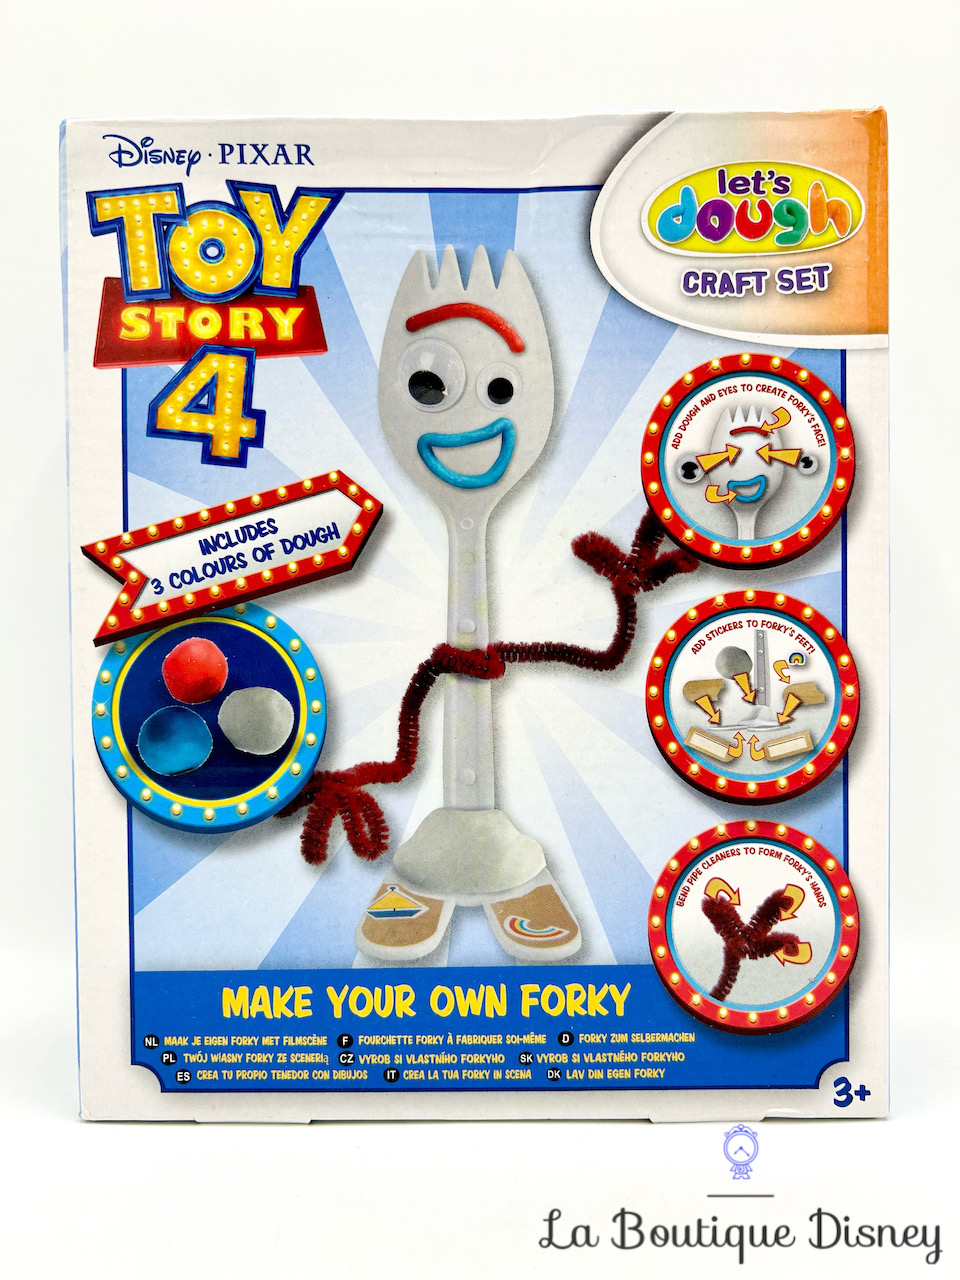 jouet-make-your-own-forky-fabrique-fourchette-toy-story-4-disney-pixar-let-dough-sambro-activité-manuelle-2